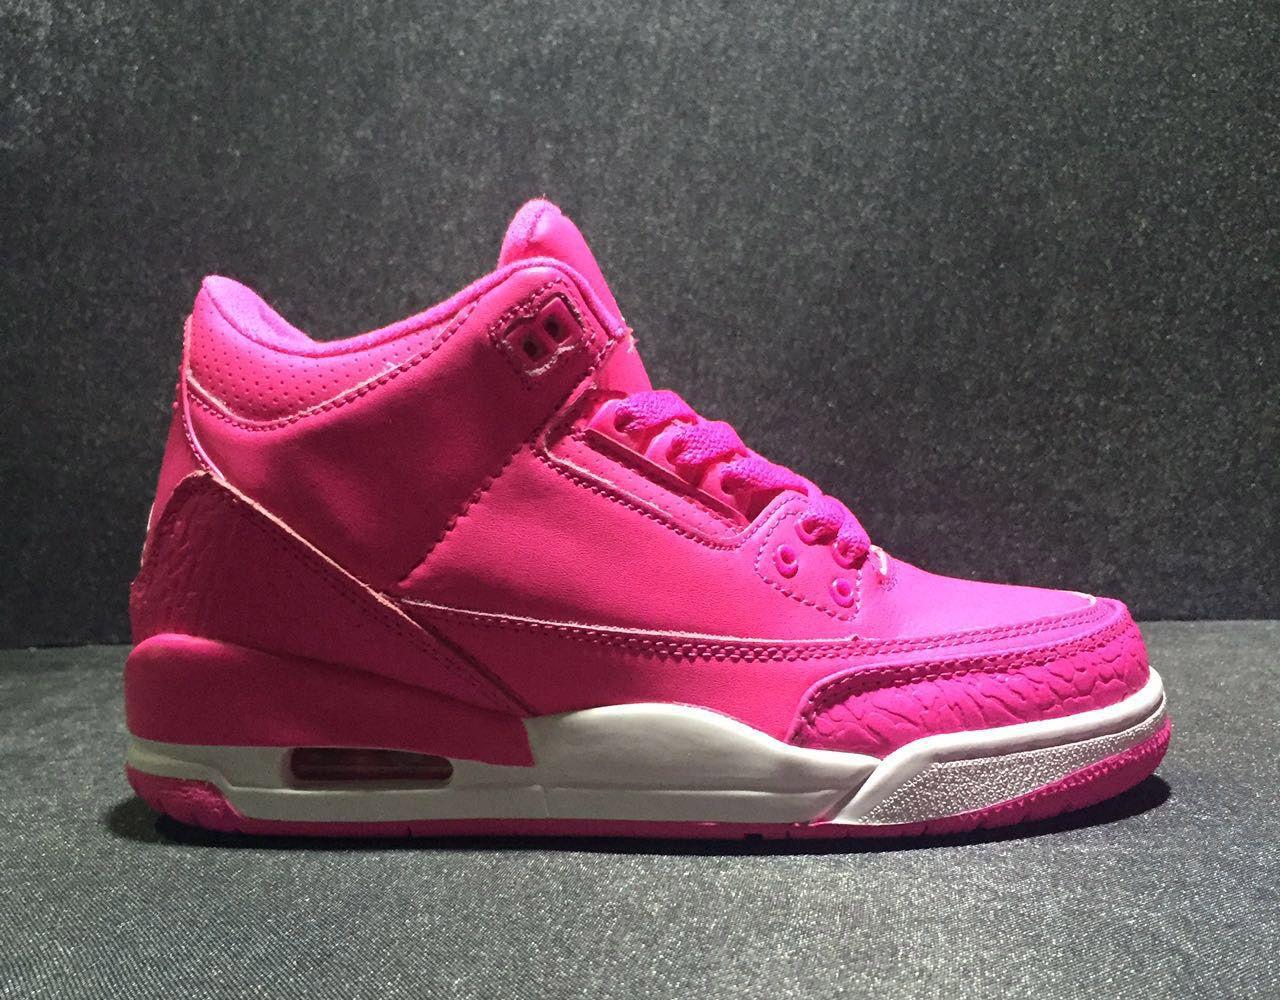 Hot Pink Jordan Logo - Air Jordan 3 GS 'Hot Pink' For Sale – New Jordans 2018